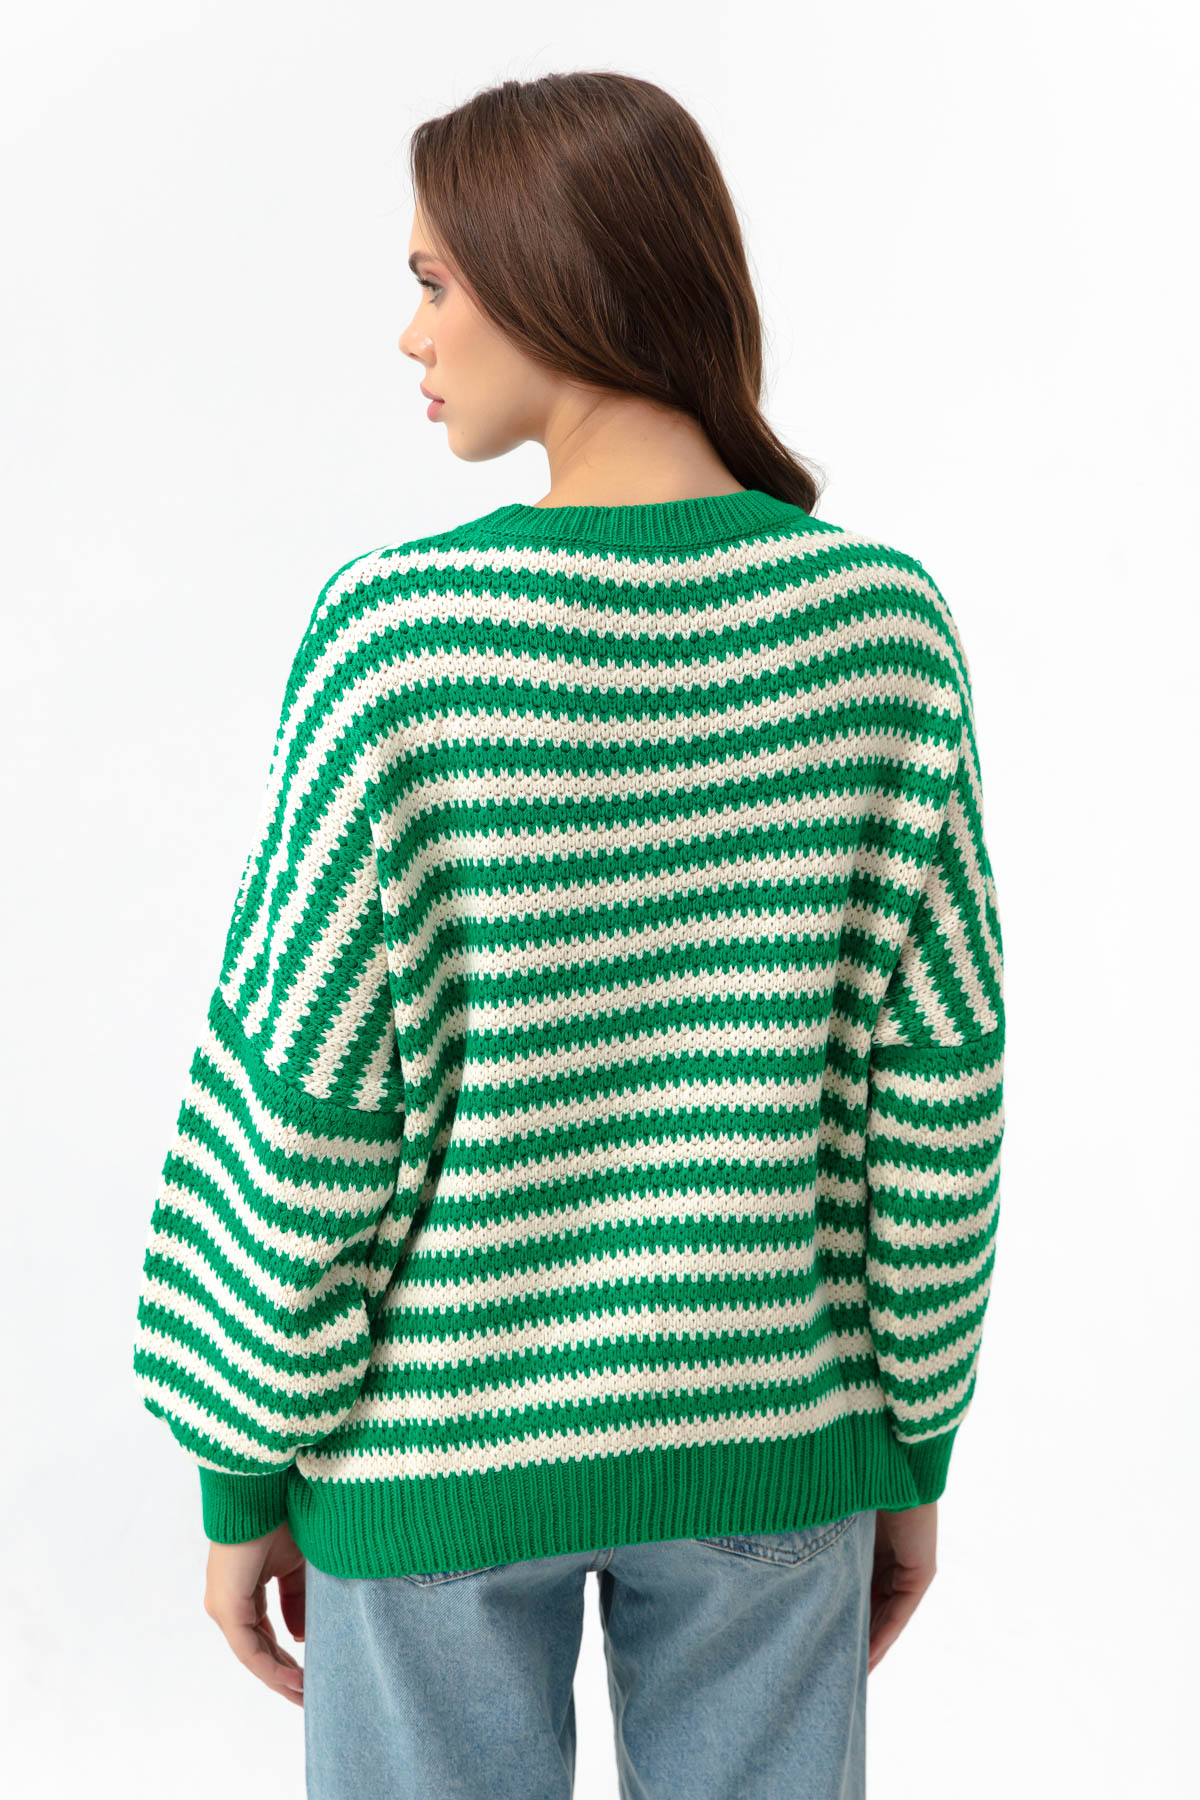 Women's Green Striped Knitwear Sweater